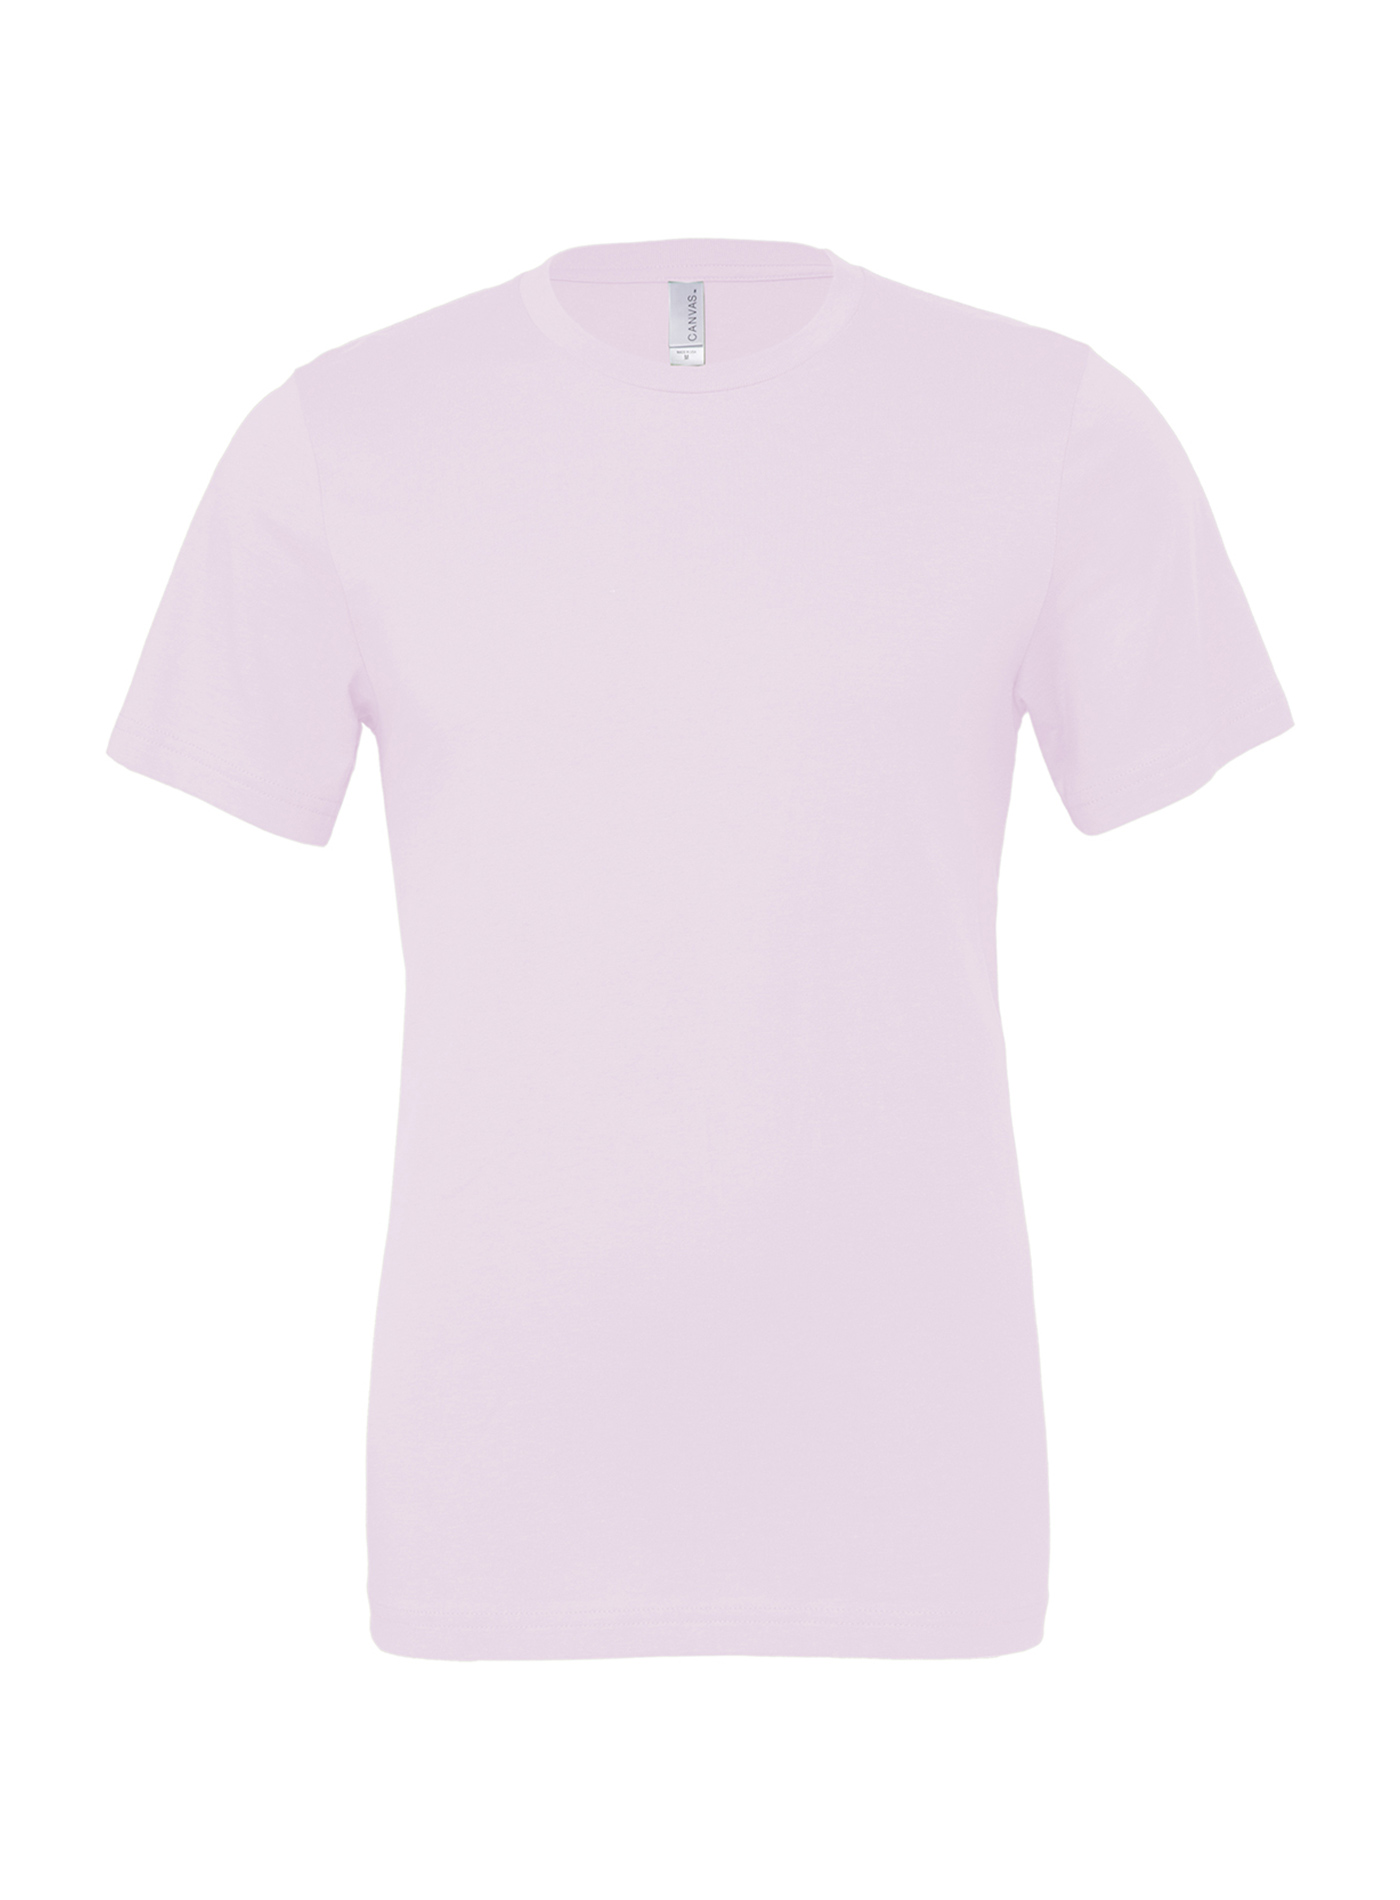 Unisex tričko Jersey - Bledě růžová M